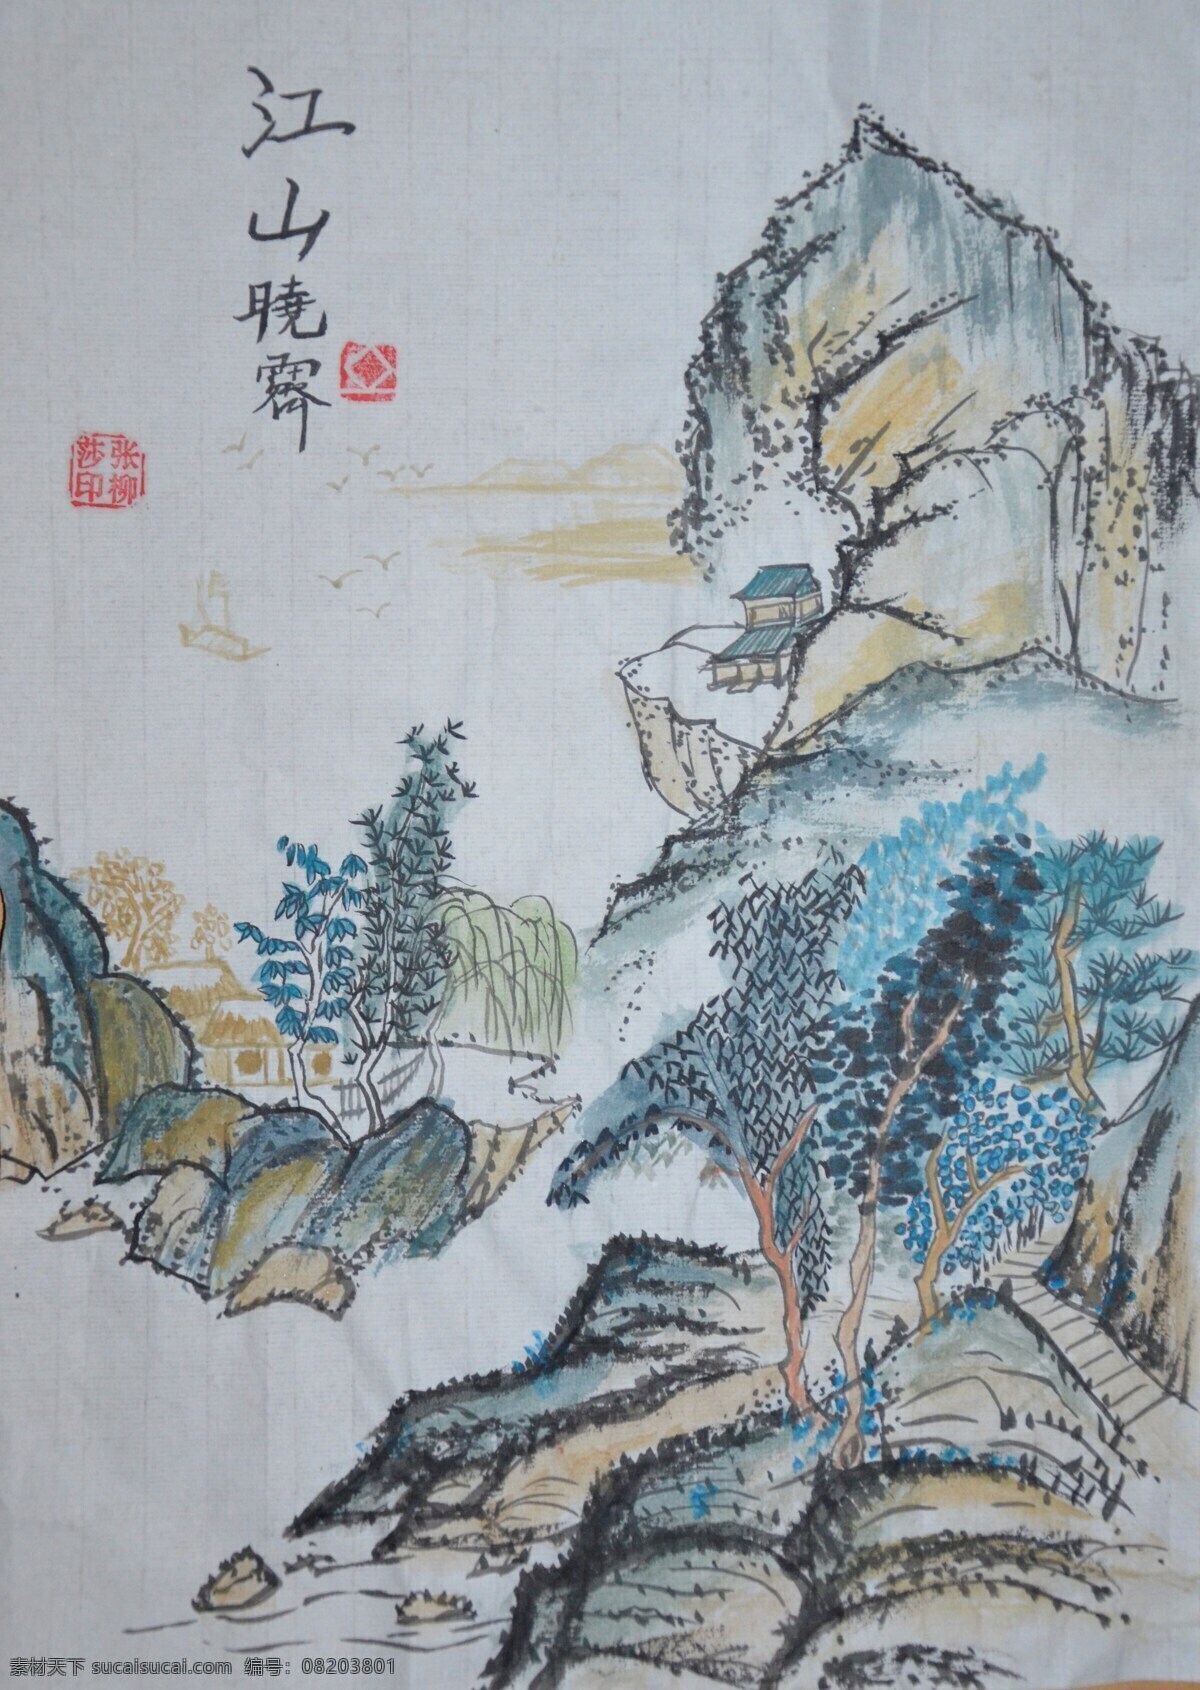 江山 晓 霁 中国画 宣纸 江山晓霁 颜色 青绿山水 远山 绘画书法 文化艺术